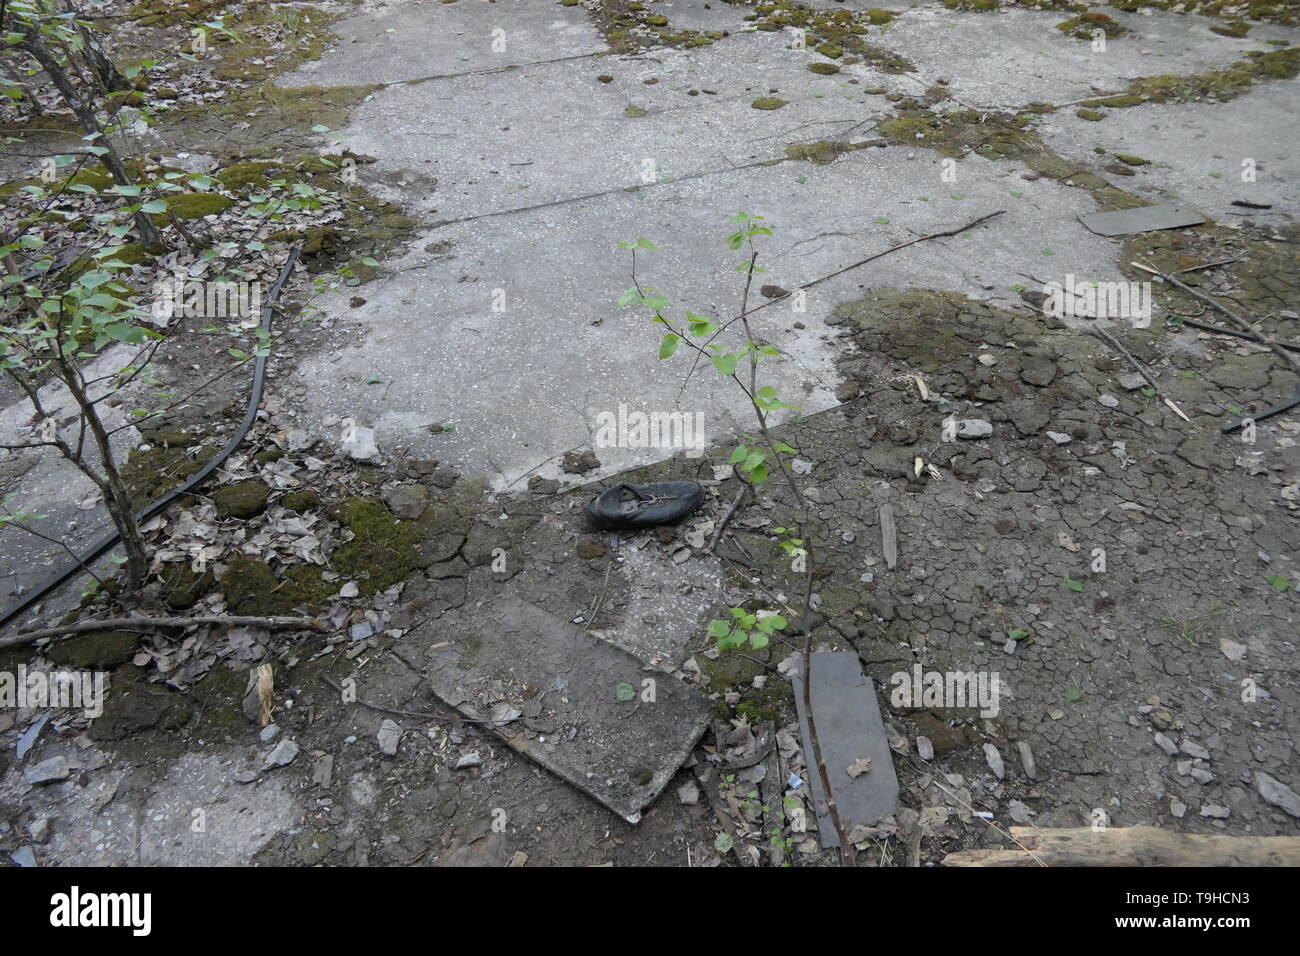 Une chaussure contaminés sur le terrain dans la ville fantôme de Pripyat, zone d'exclusion de Tchernobyl, l'Ukraine Banque D'Images